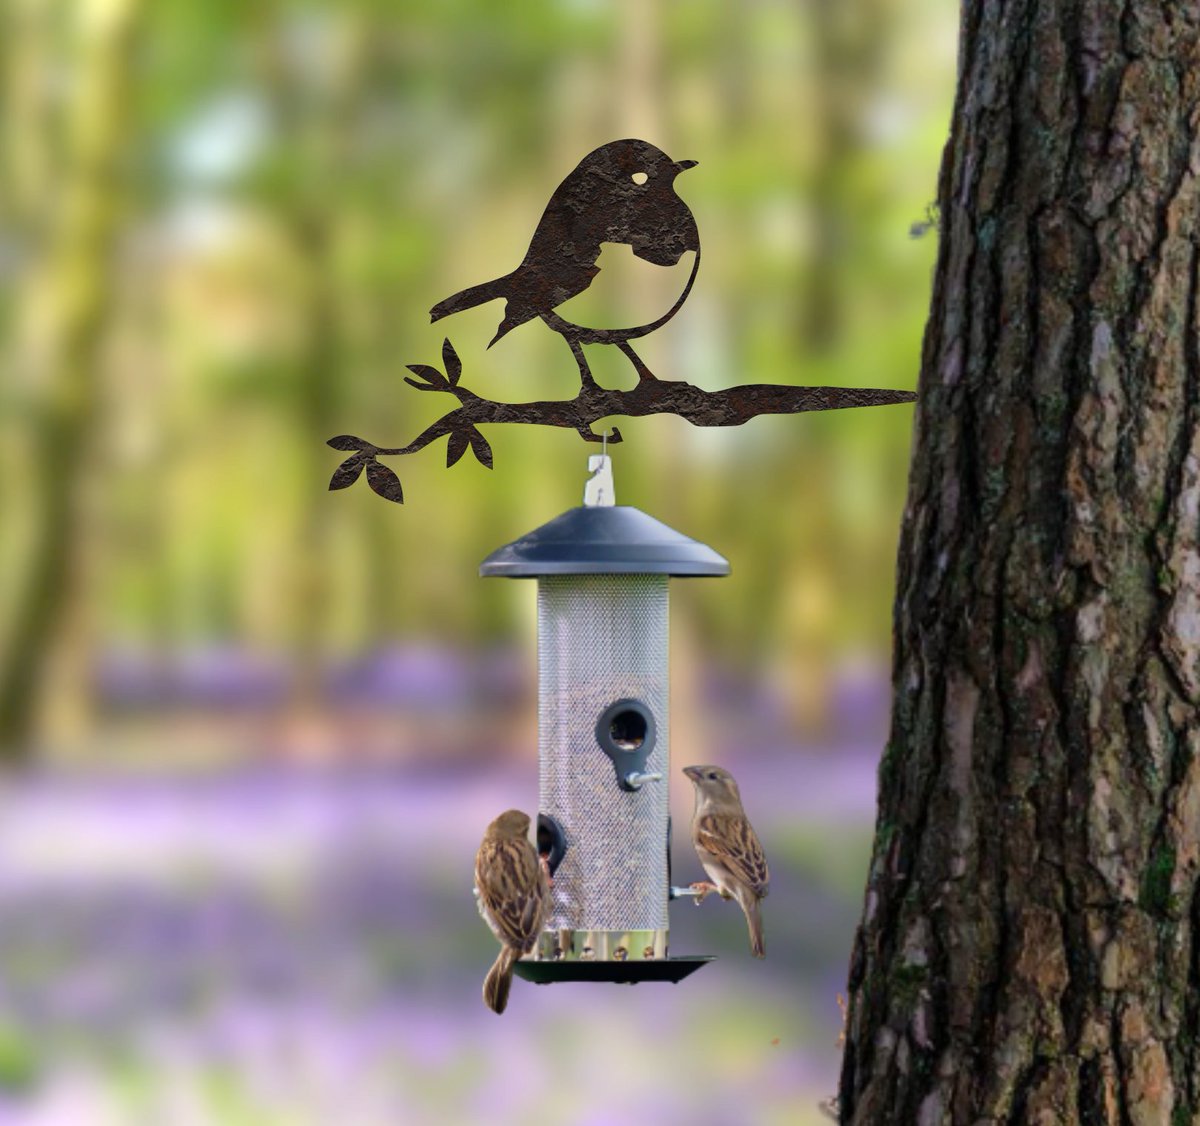 Robin Red Breast Metal Bird Feeder Hanger 
Perfect to feed all the hungry little birdies in your garden 🐦🍩
metalbirds.co.uk

#birdfeeders #robins #birdlovers #birdfeeding #birdsilhouette #metalart #metalbirds #ukbirds #birdlovers